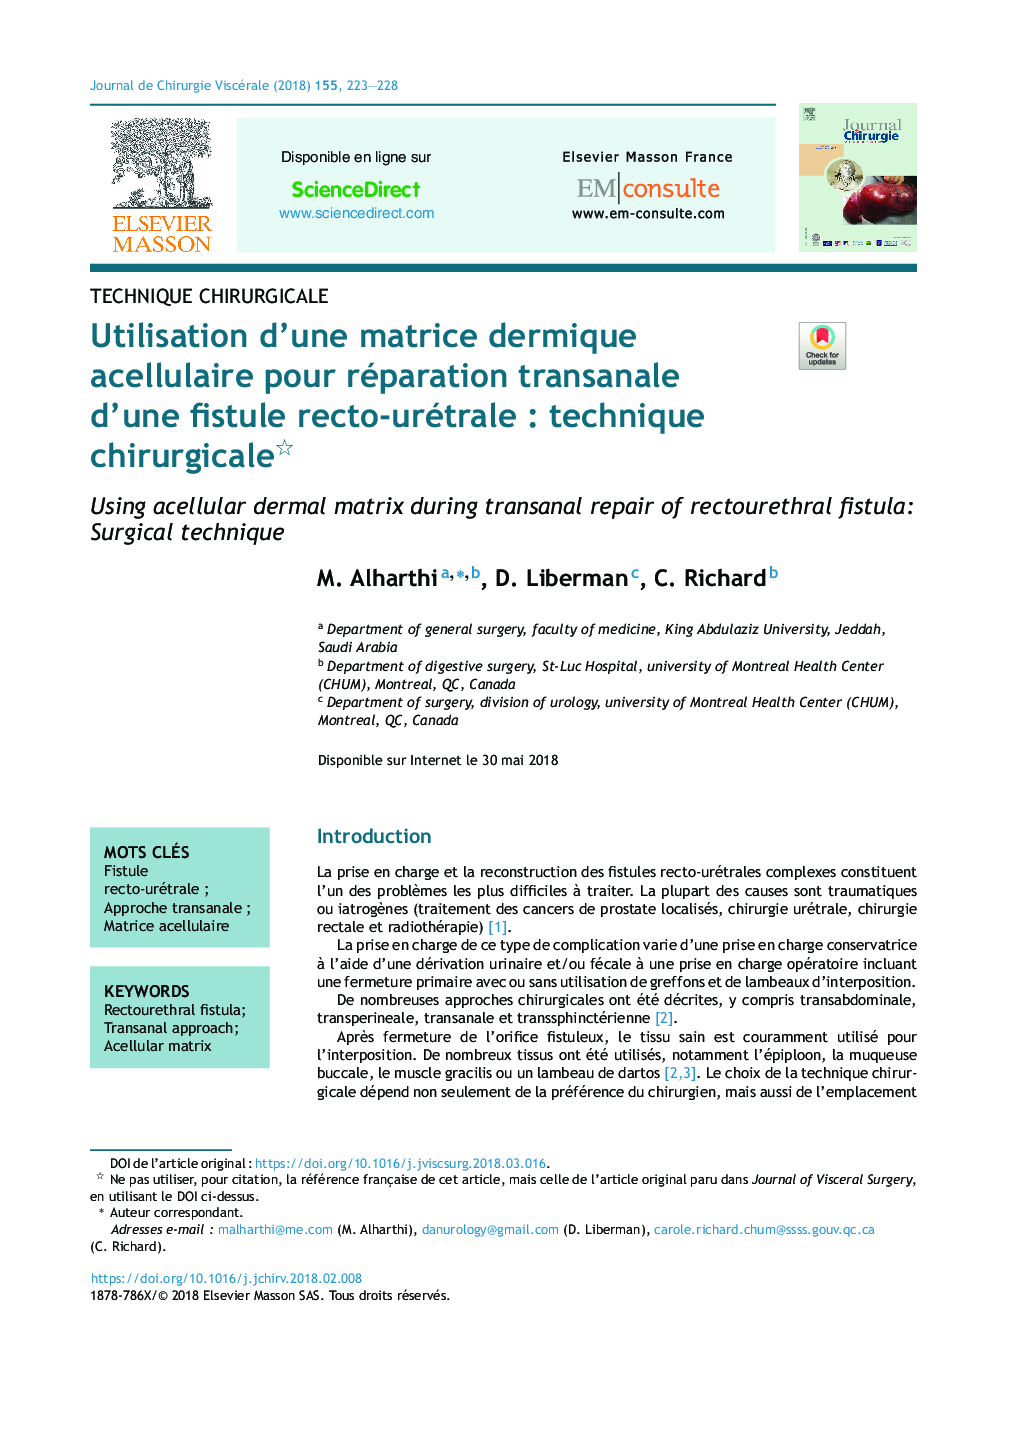 Utilisation d'une matrice dermique acellulaire pour réparation transanale d'une fistule recto-urétraleÂ : technique chirurgicale